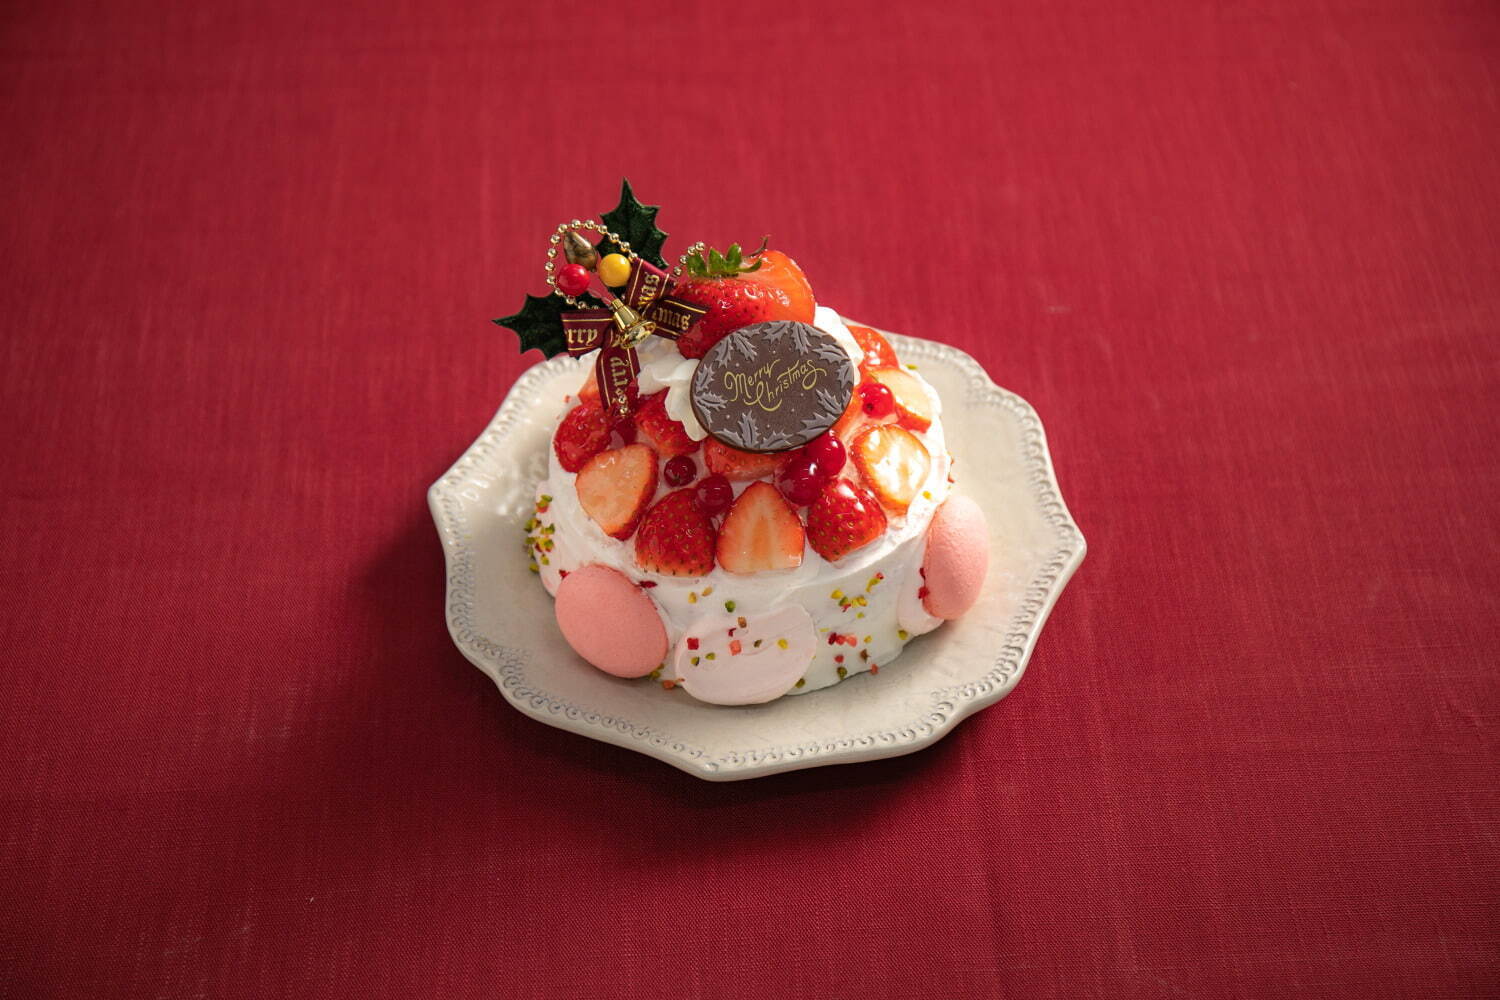 ルミネ ニュウマンのクリスマスケーキ21年 雪だるま型ケーキやエシレバター使用タルトなど ファッションプレス